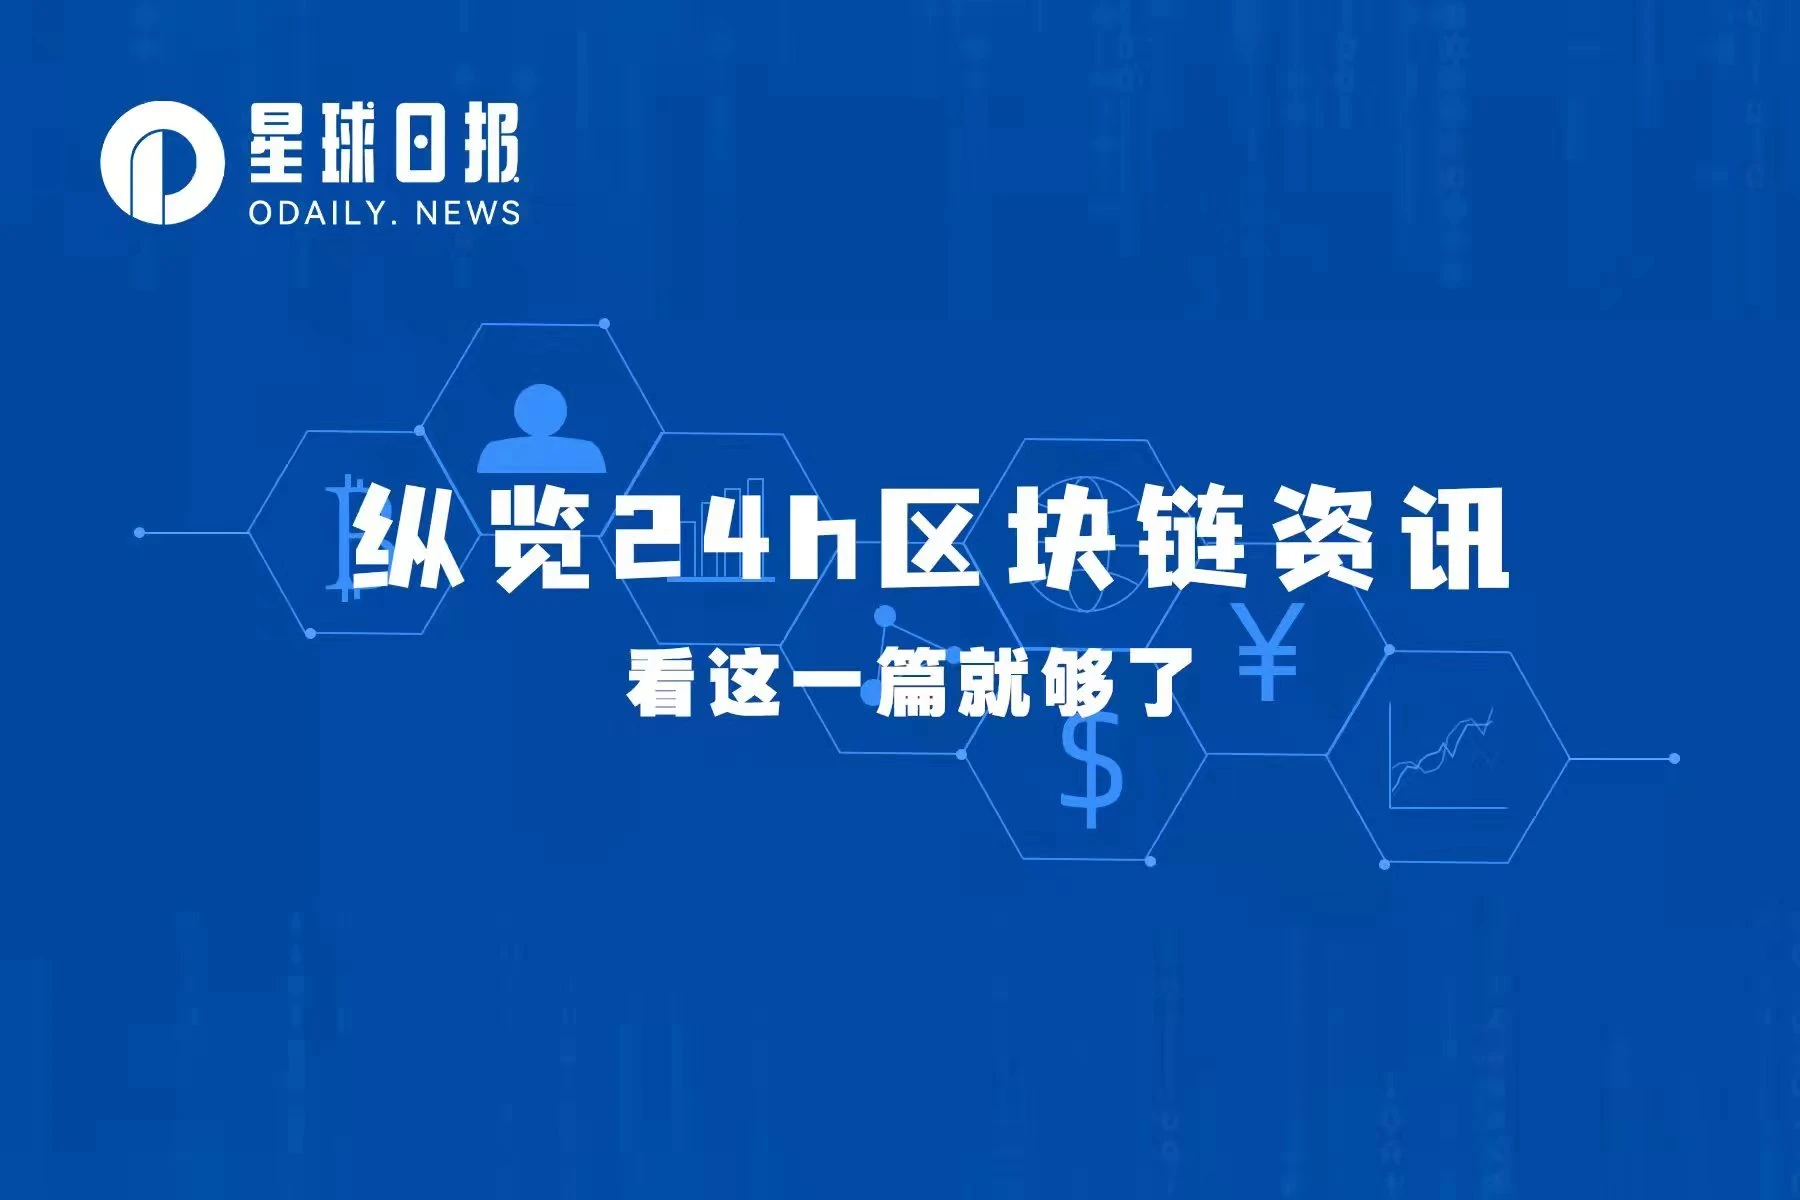 星球日报 | 电商巨头eBay首次发行NFT；广州天河成立逾200亿元宇宙基金（5月24日）